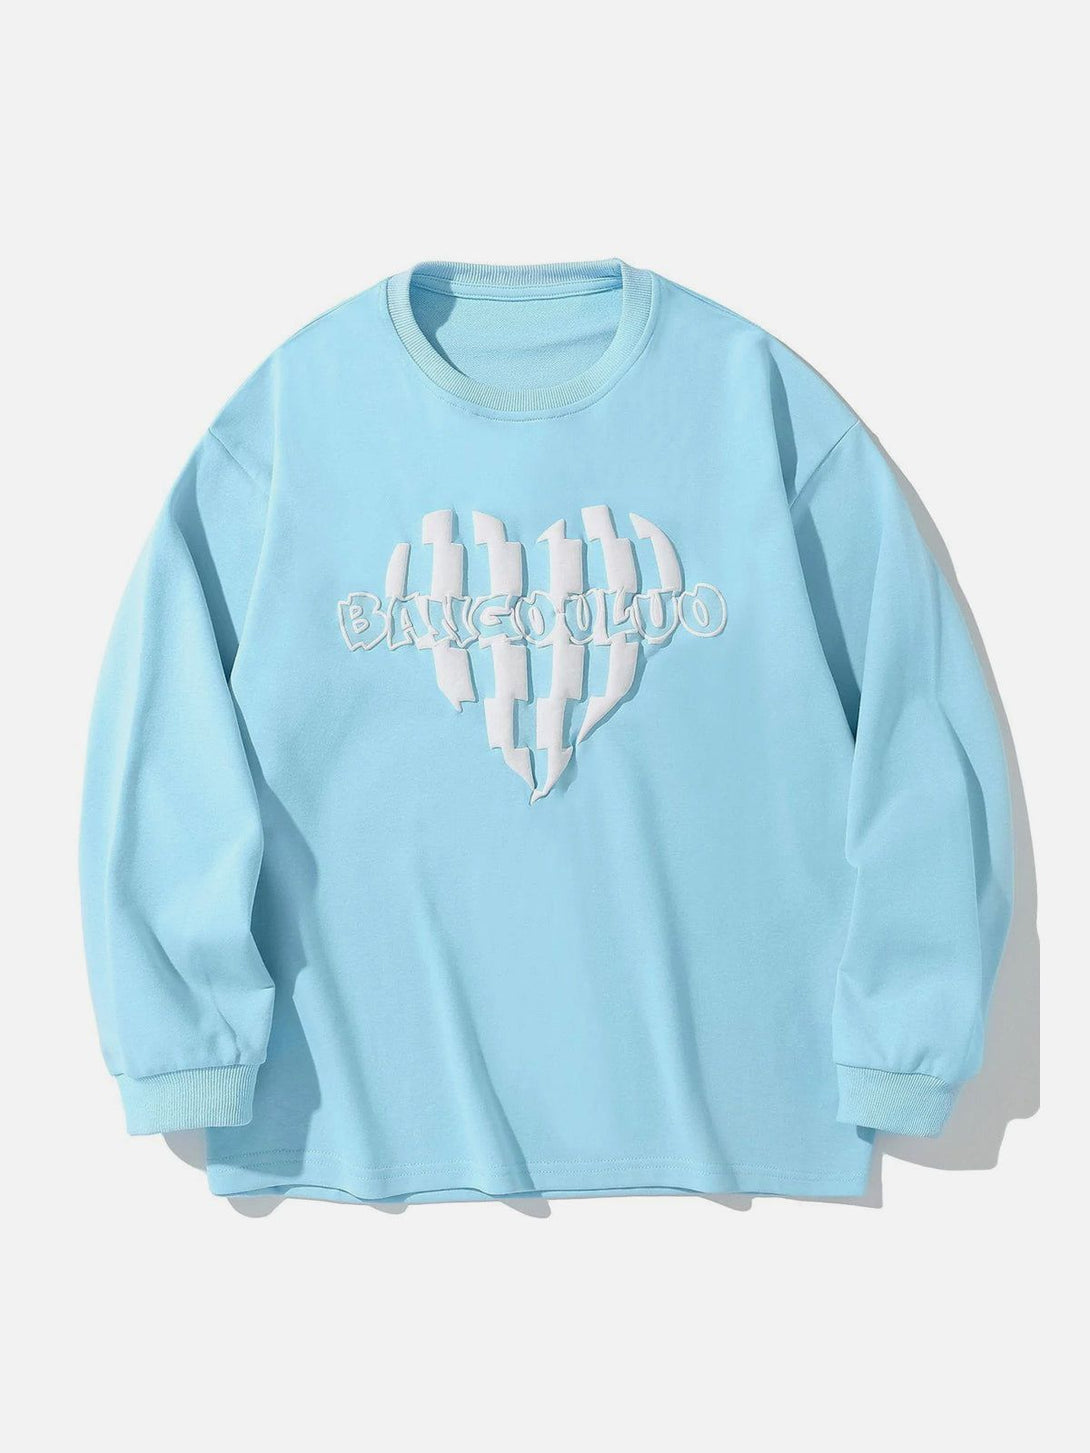 Majesda® - Stitching Love Pattern Sweatshirt outfit ideas streetwear fashion